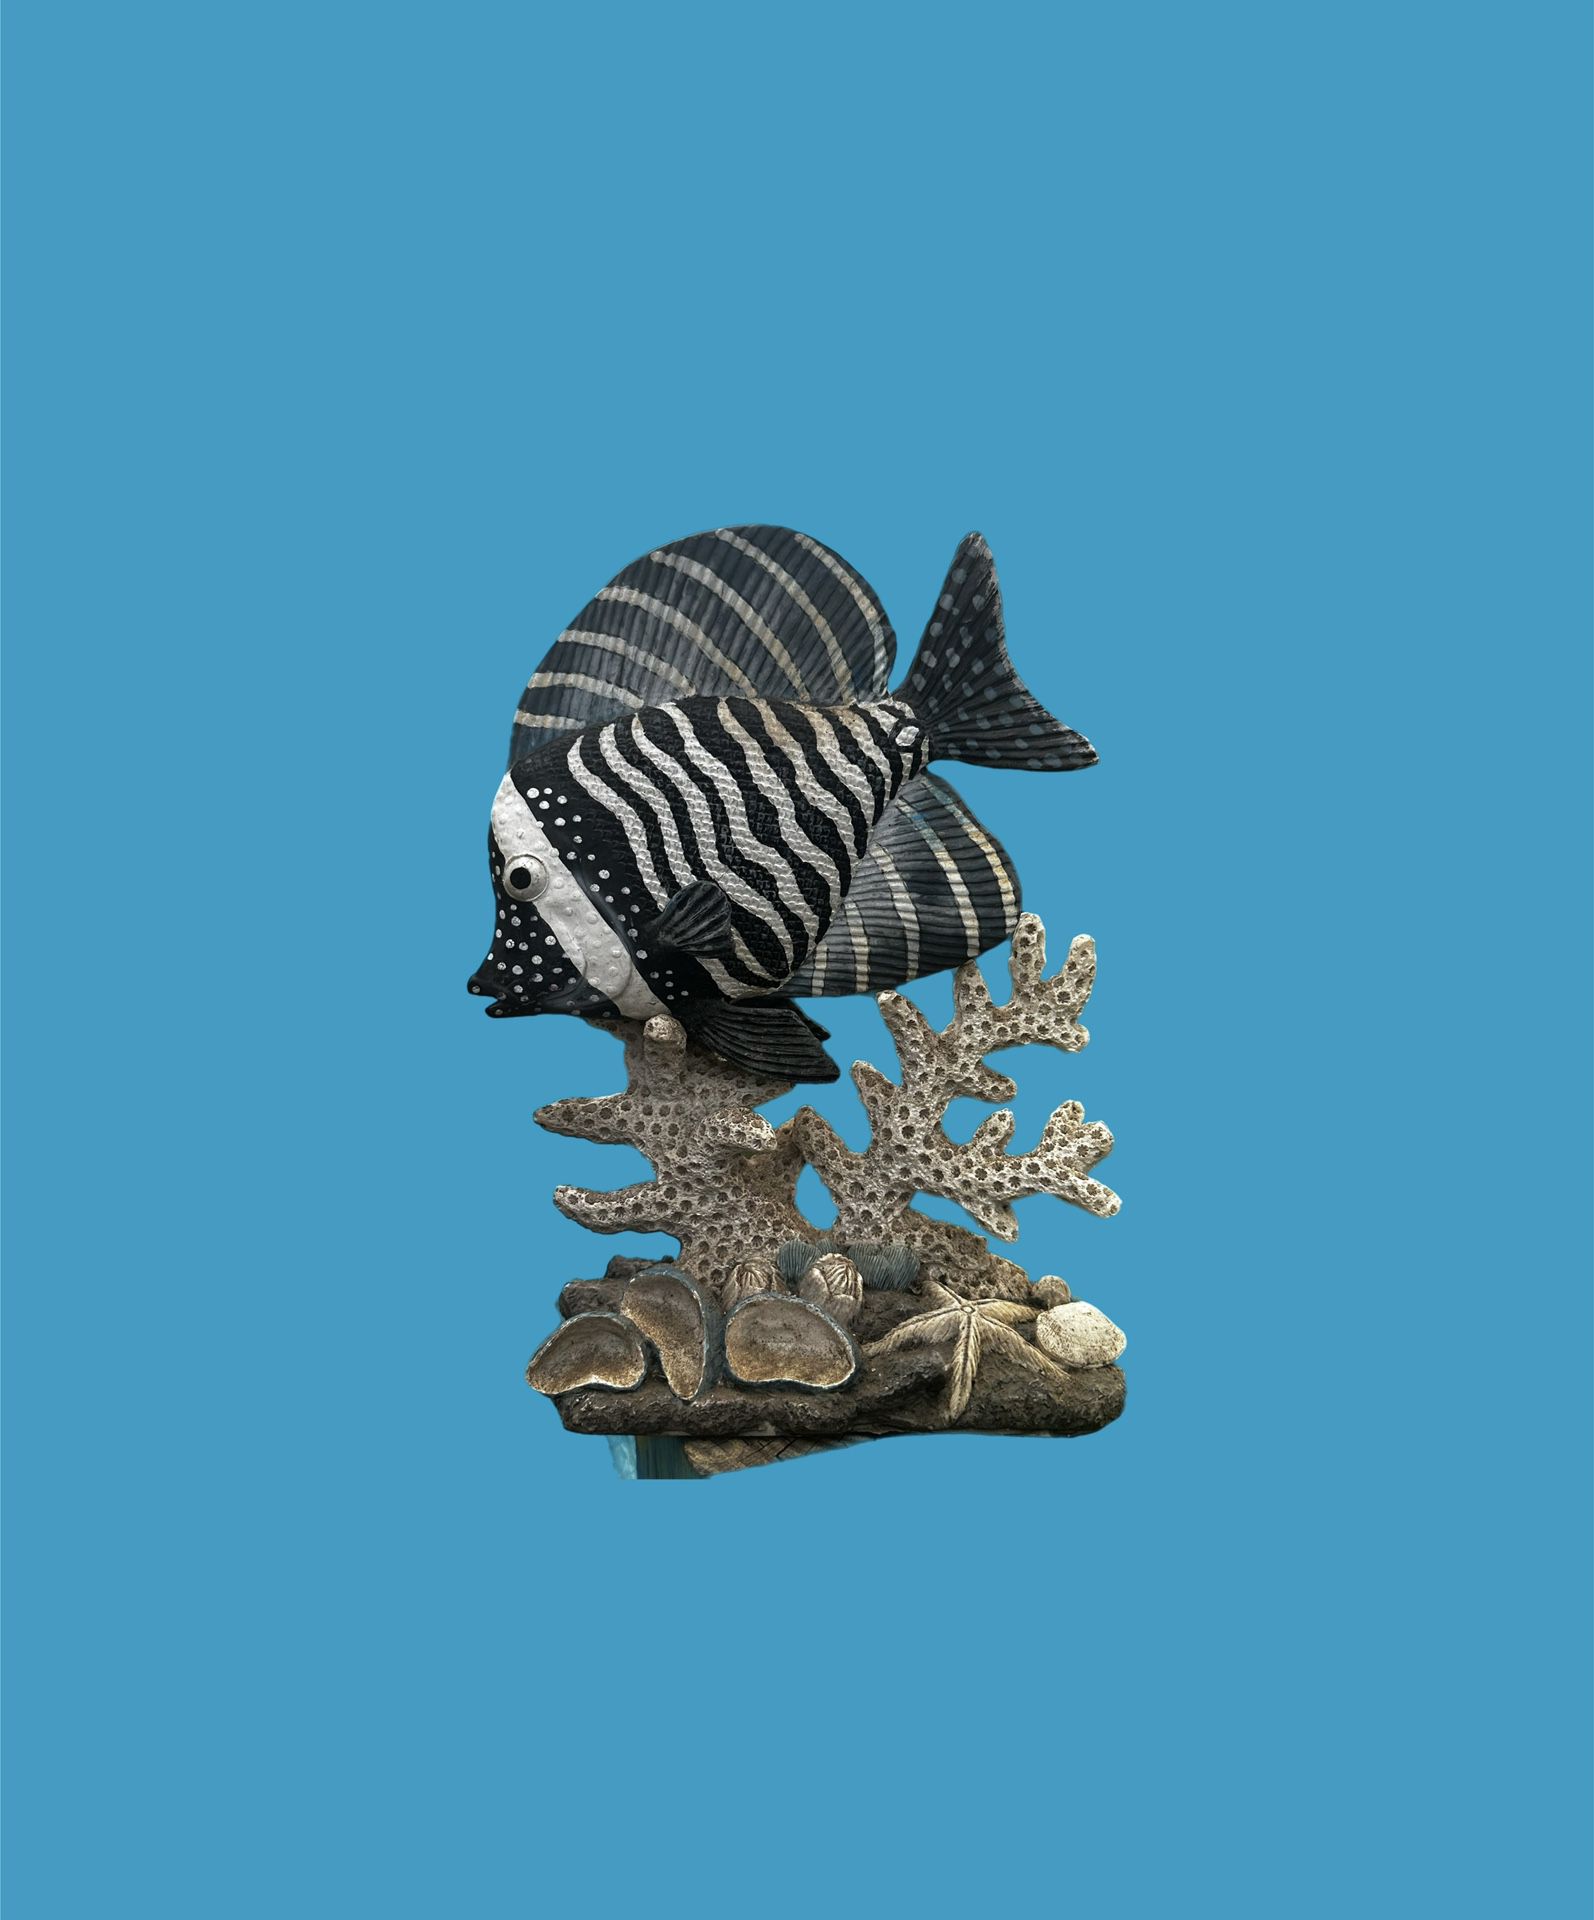 Vintage Resin FISH Stature or Aquarium Decor Large 10” x 7” x 3”